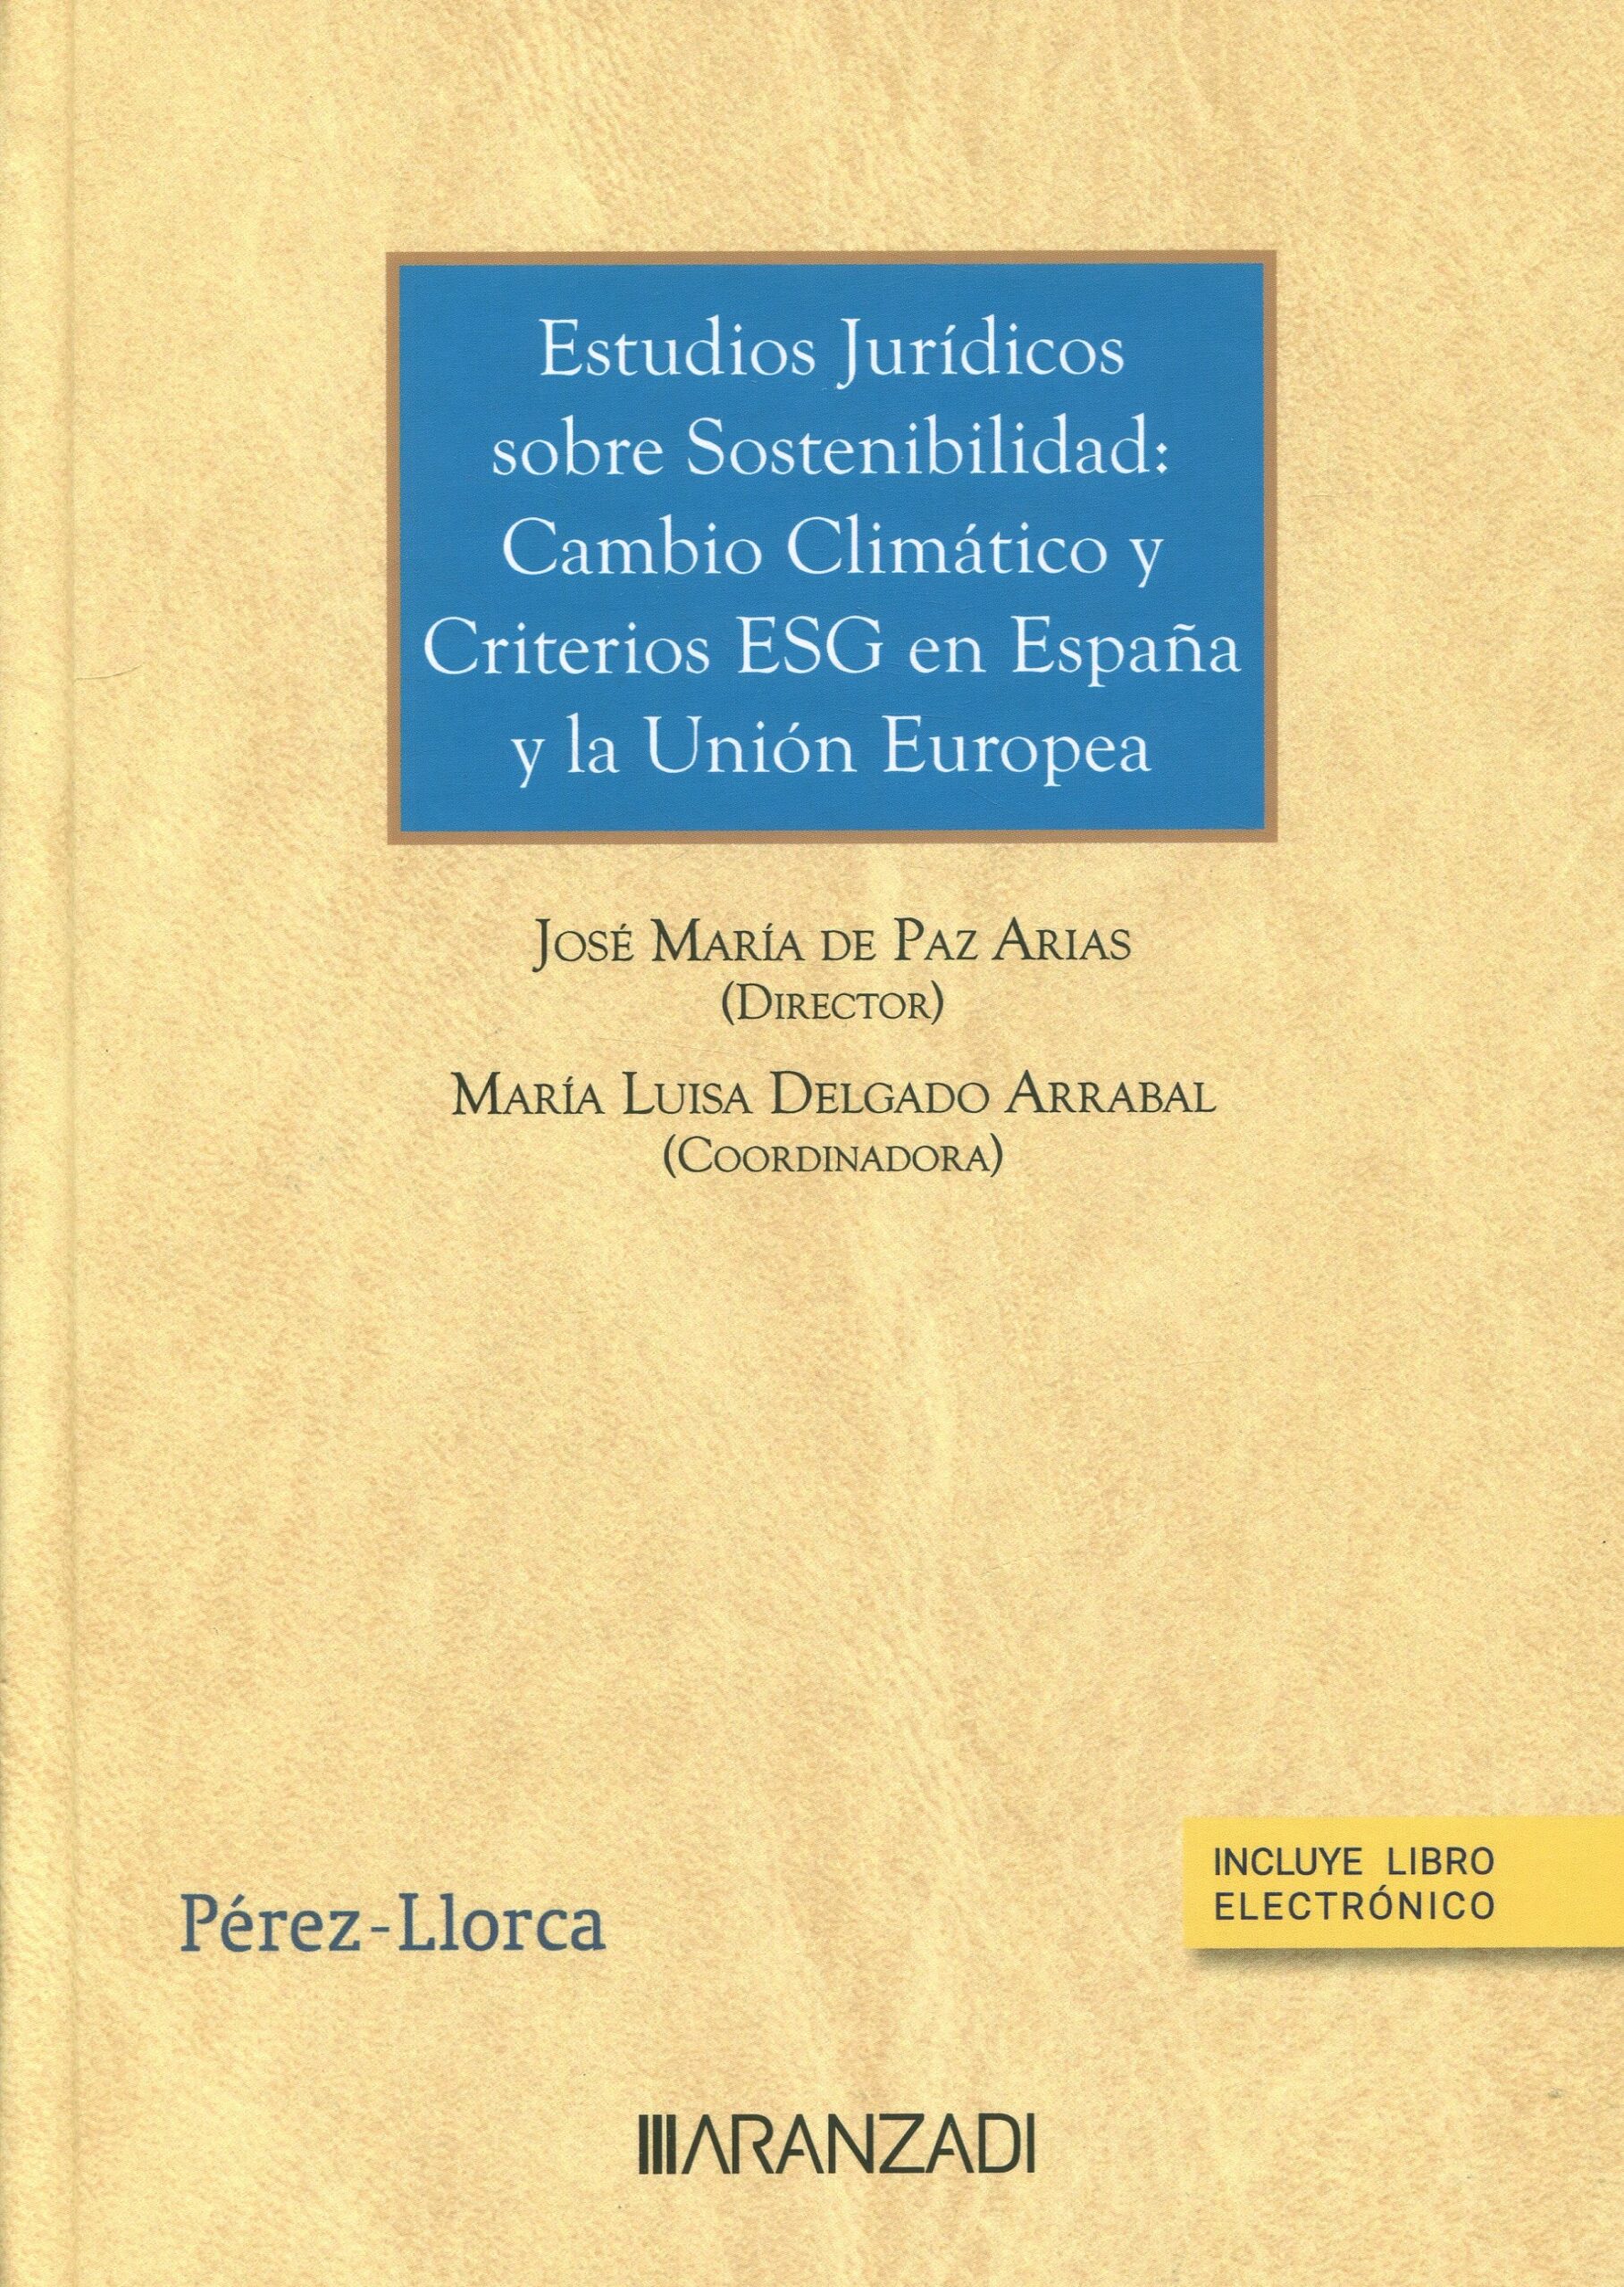 Estudios jurídicos sobre sostenibilidad: cambio climático y criterios ESG en España y la UE